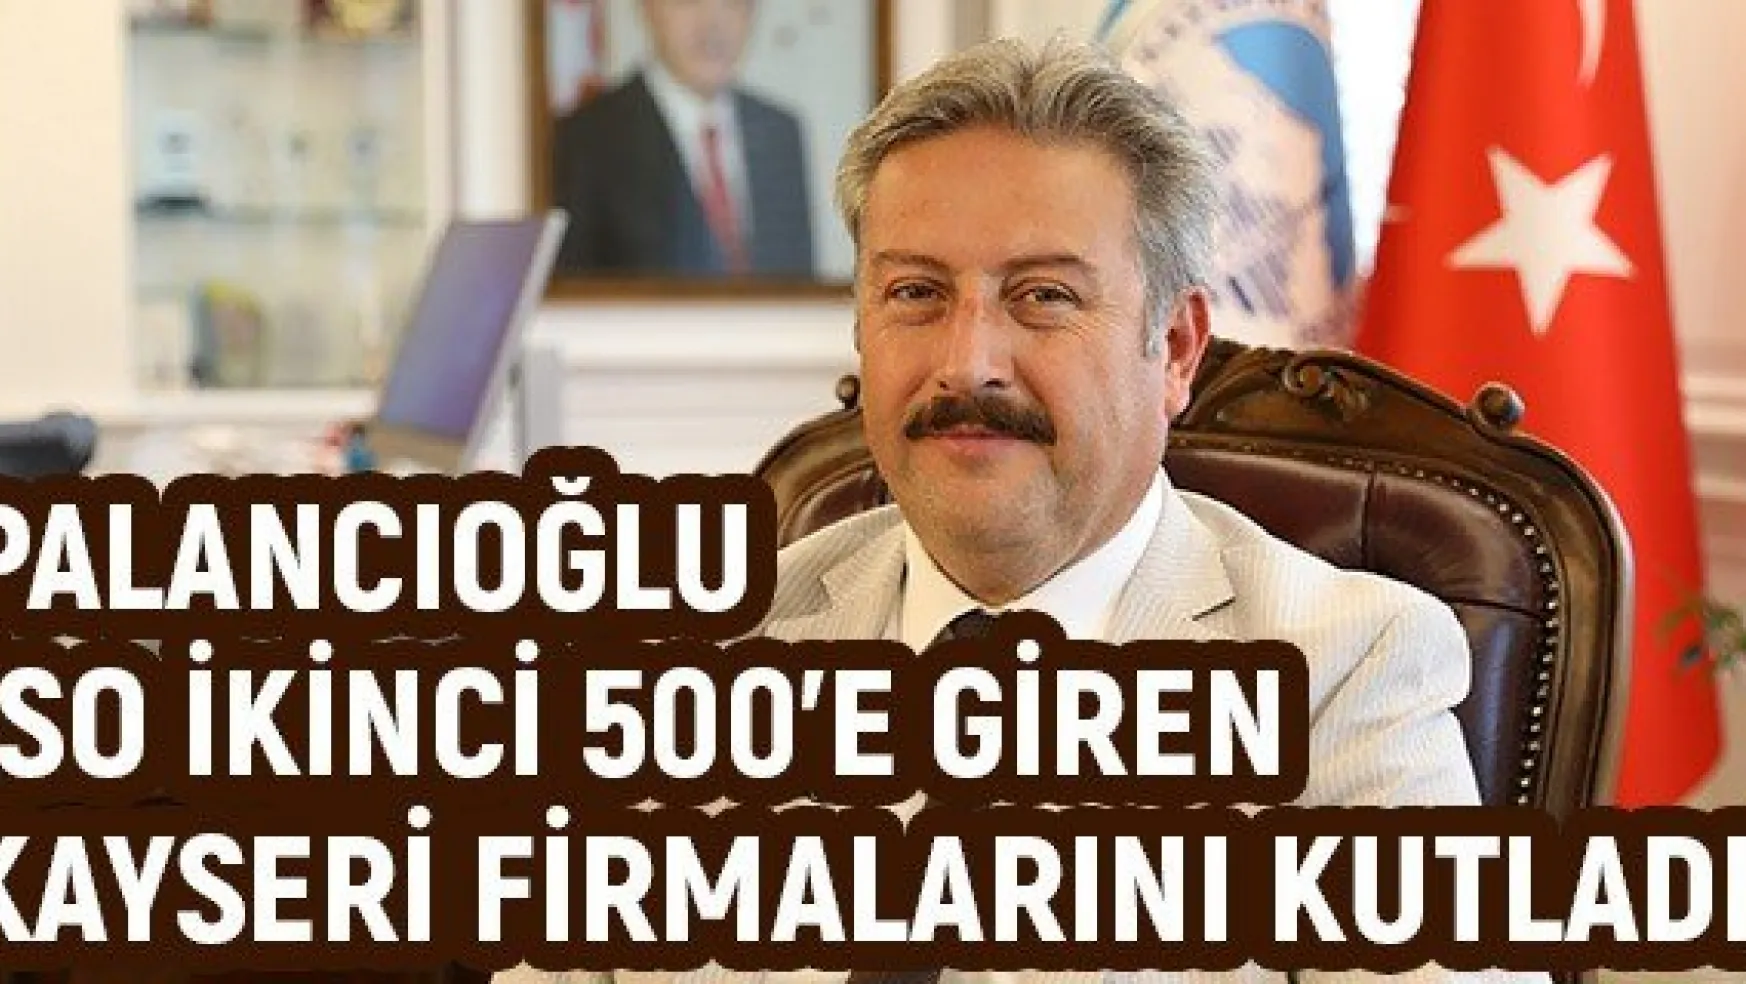 Palancıoğlu İSO İkinci 500'e giren Kayseri firmalarını kutladı